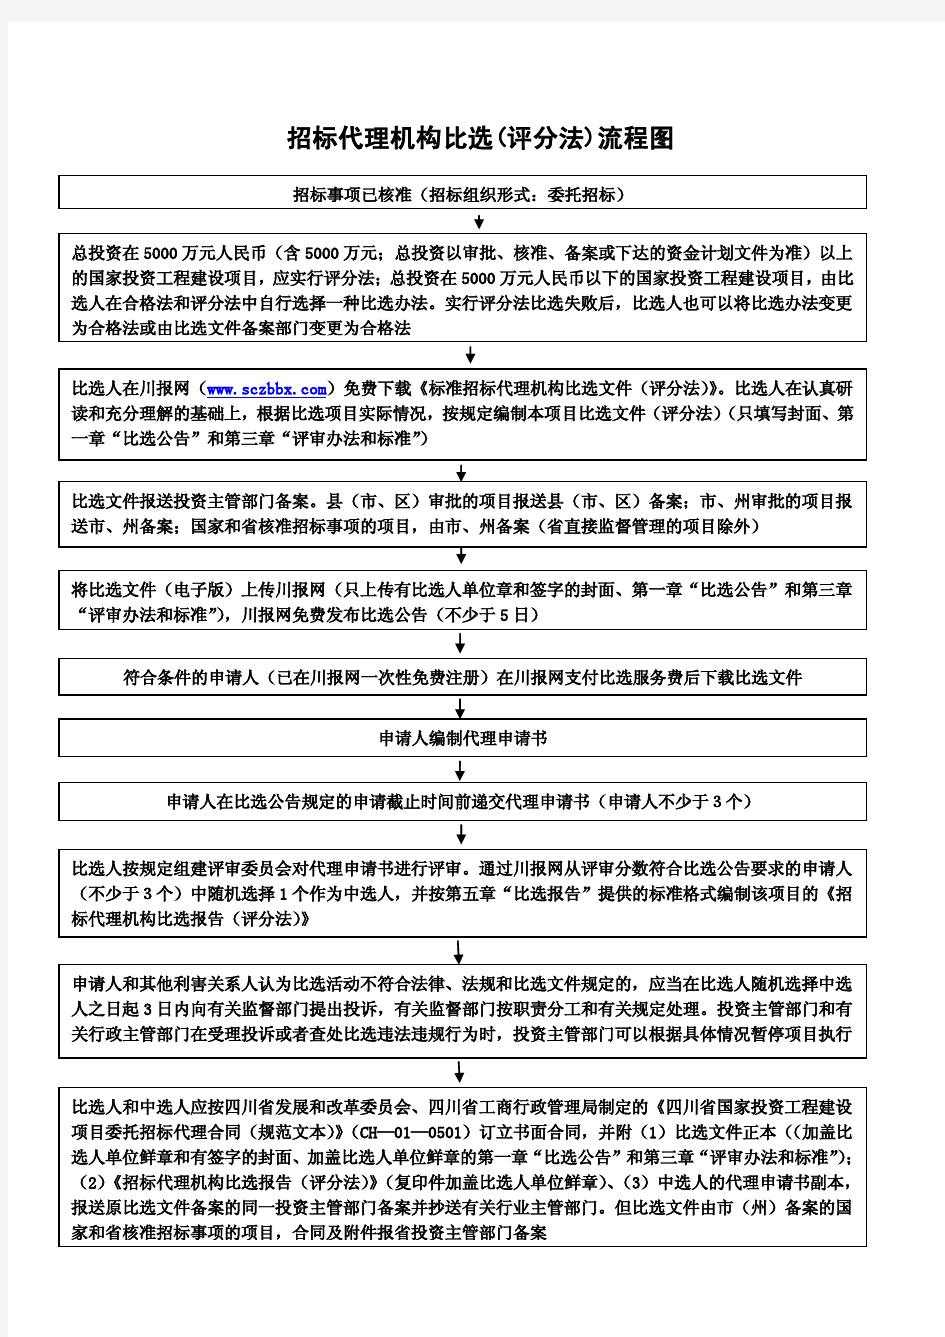 四川省国家投资工程建设项目标准招标代理机构比选文件(评分法)